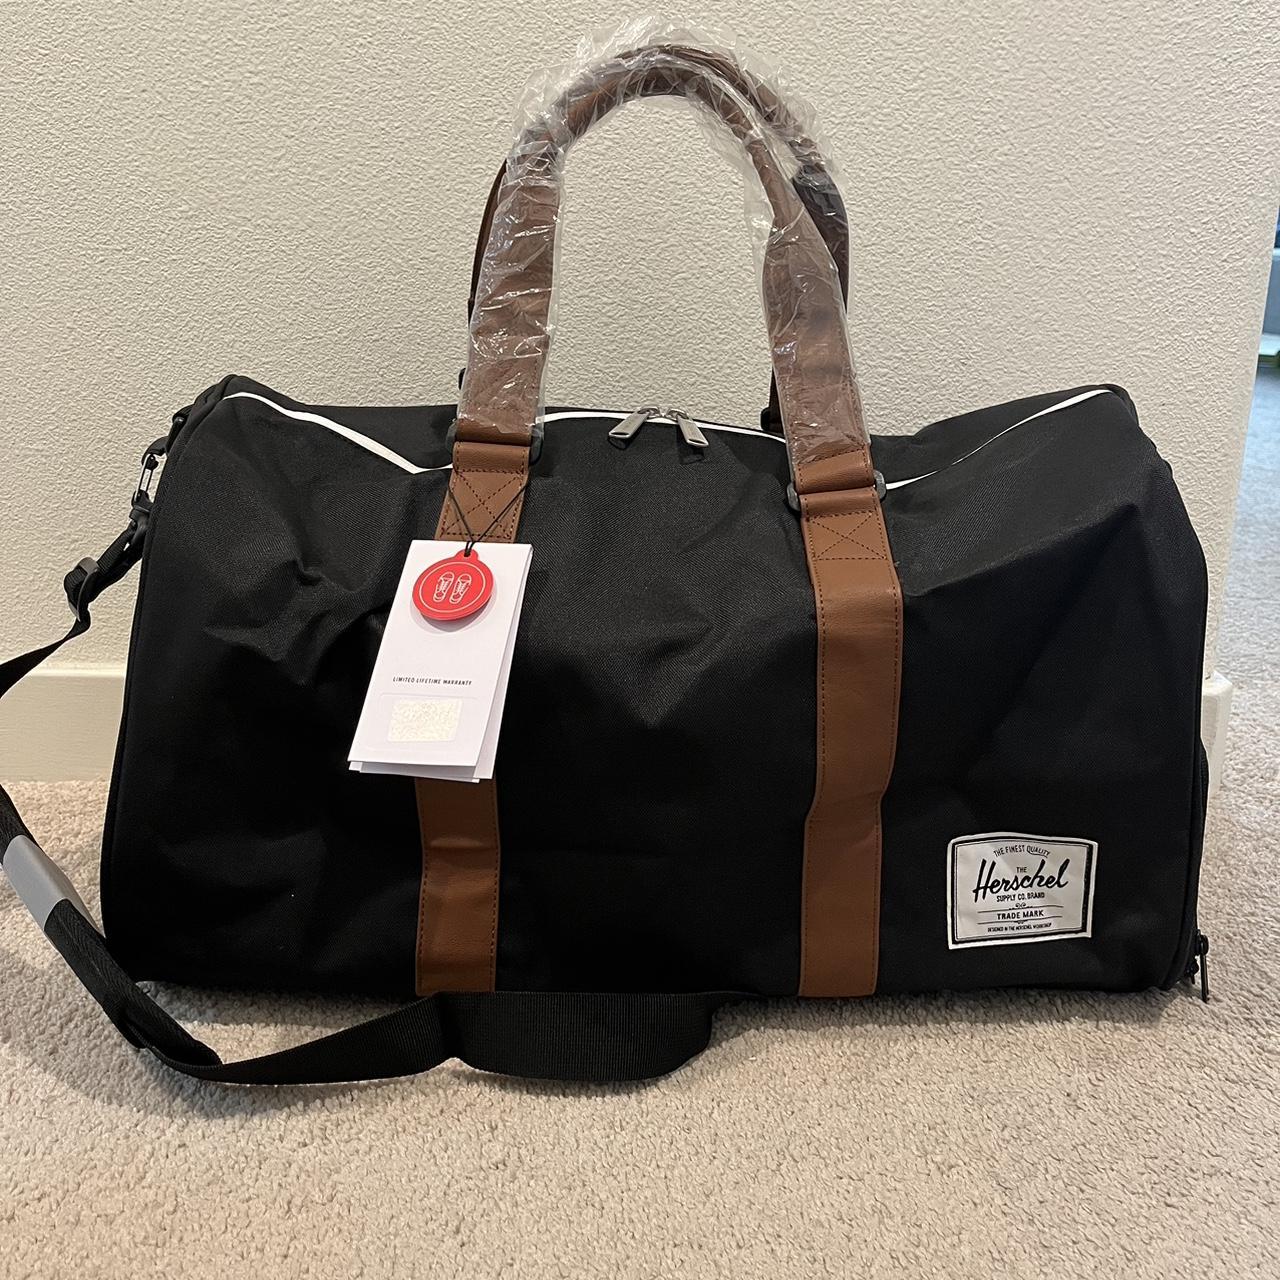 Herschel Men's Black and Brown Bag